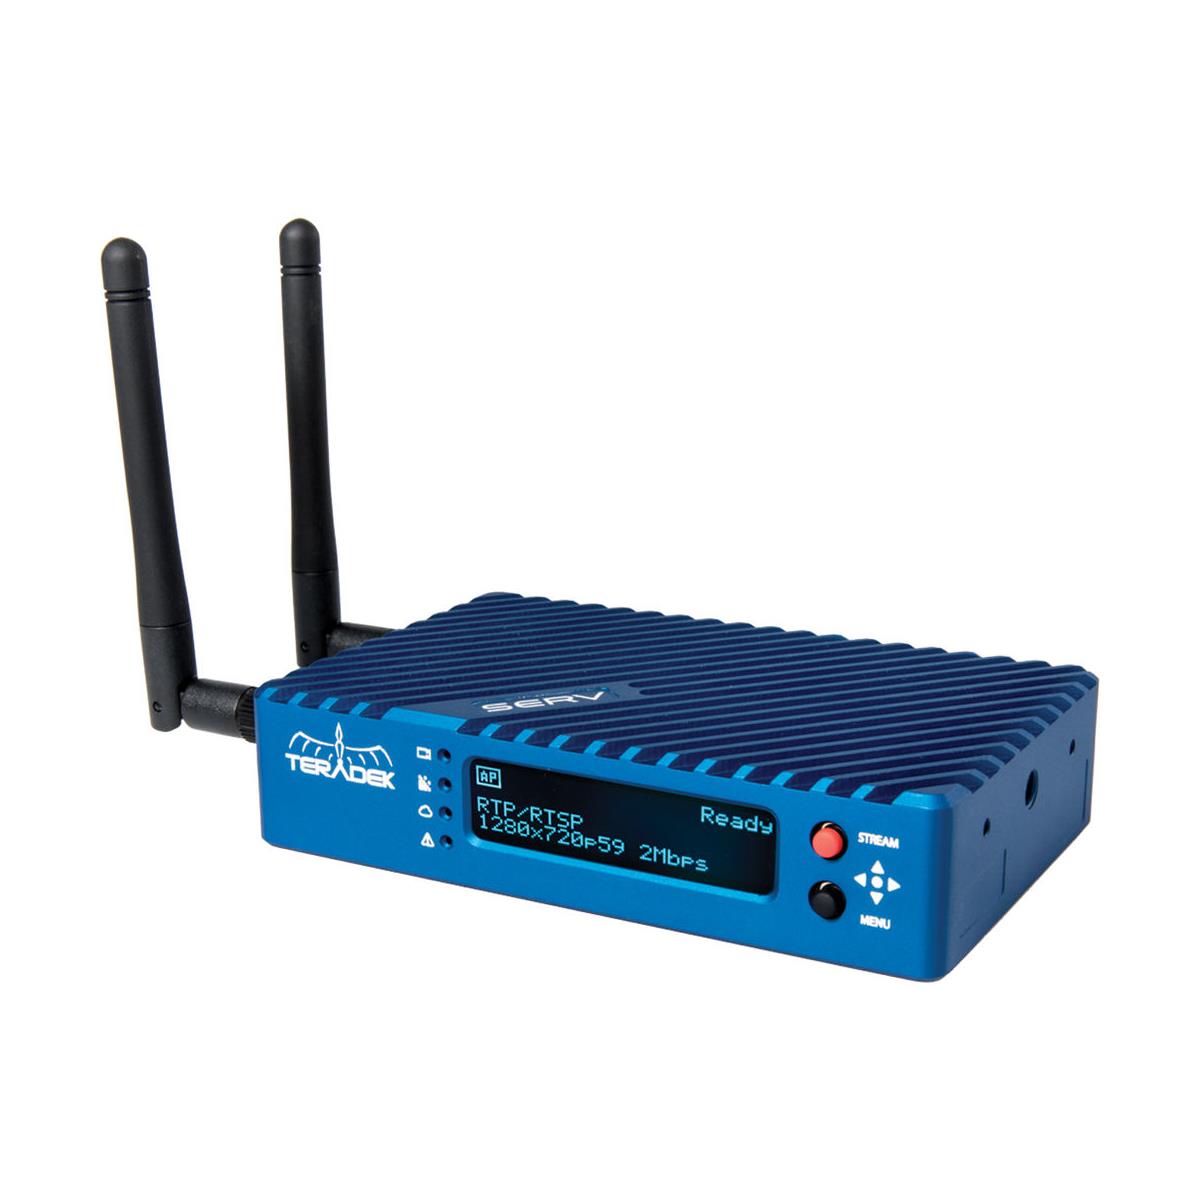 Image of Teradek Serv Pro Wi-Fi Video Monitoring System